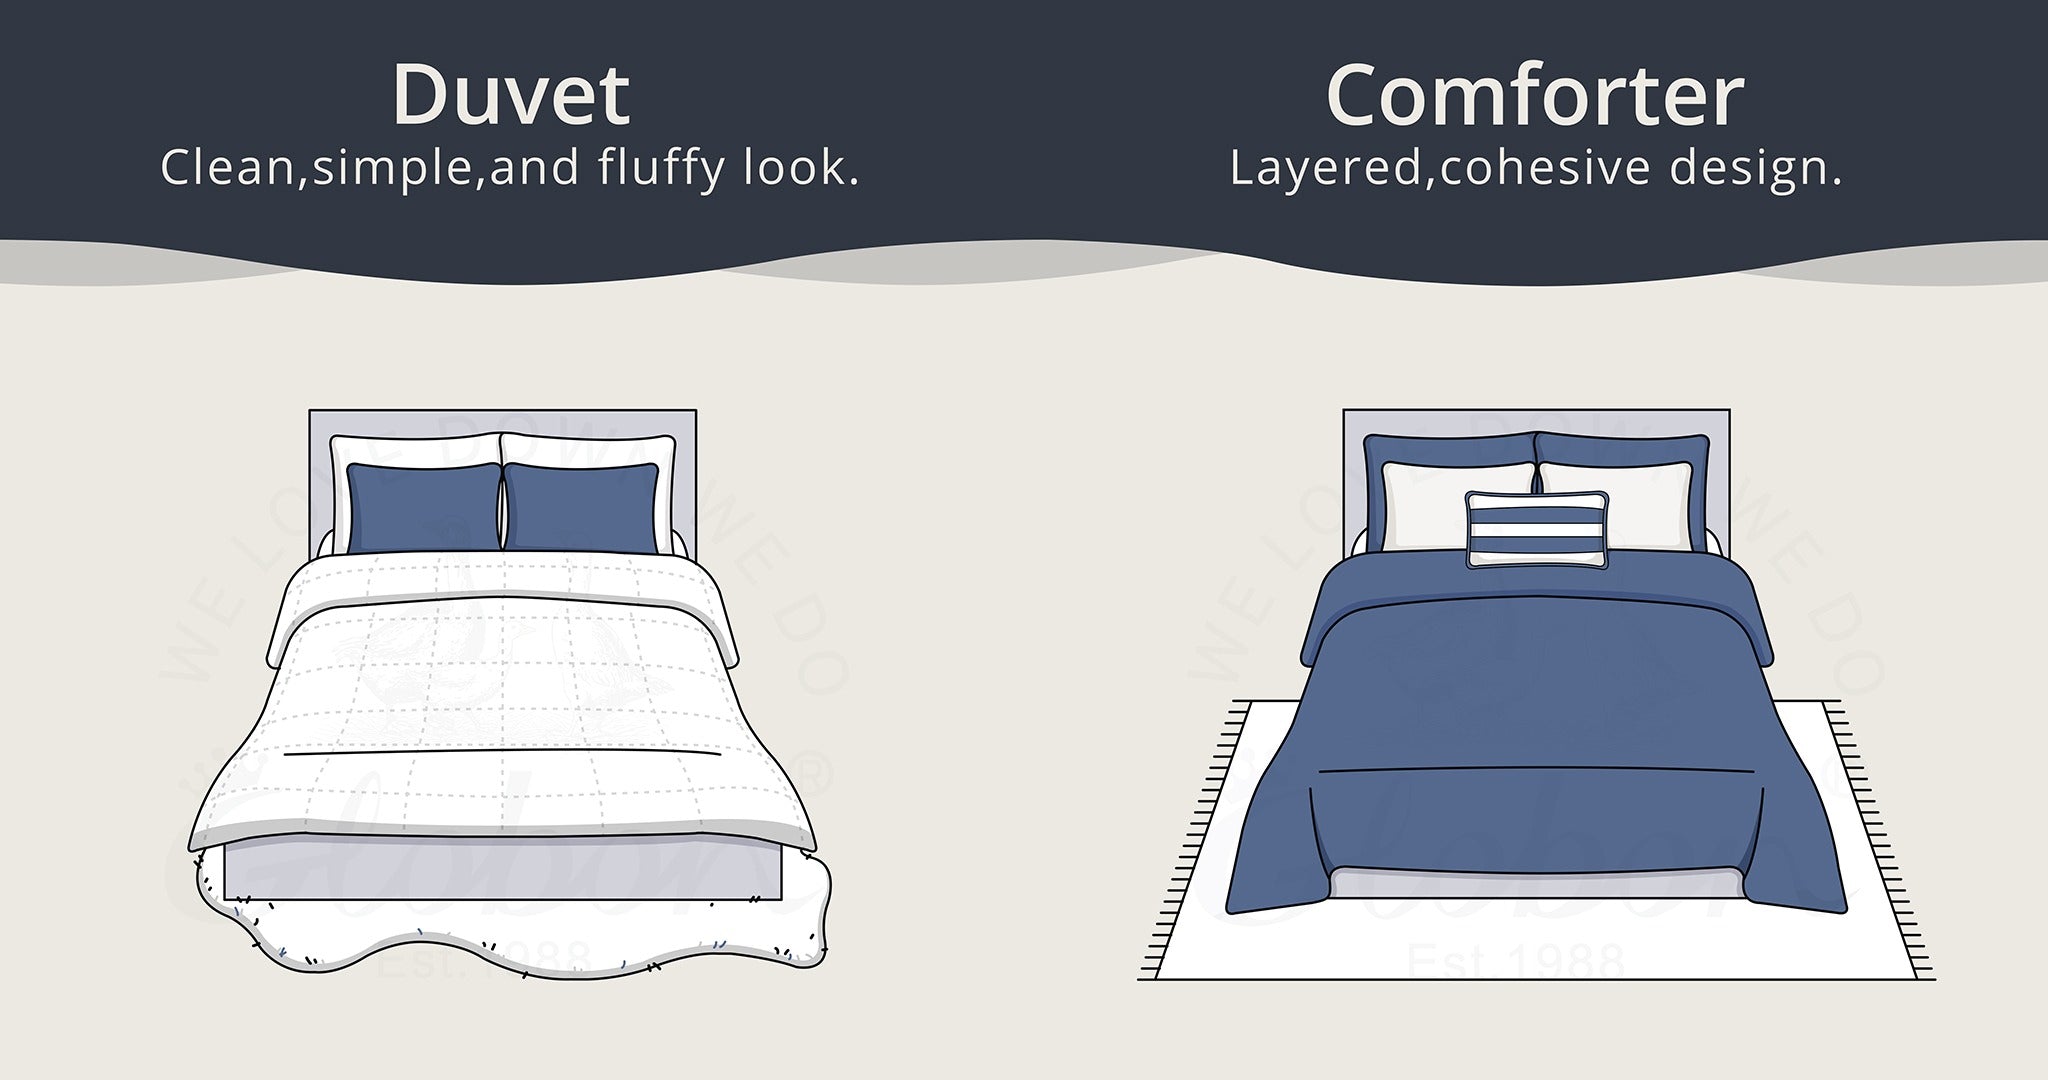 Duvet vs Comforter: What is a Duvet?